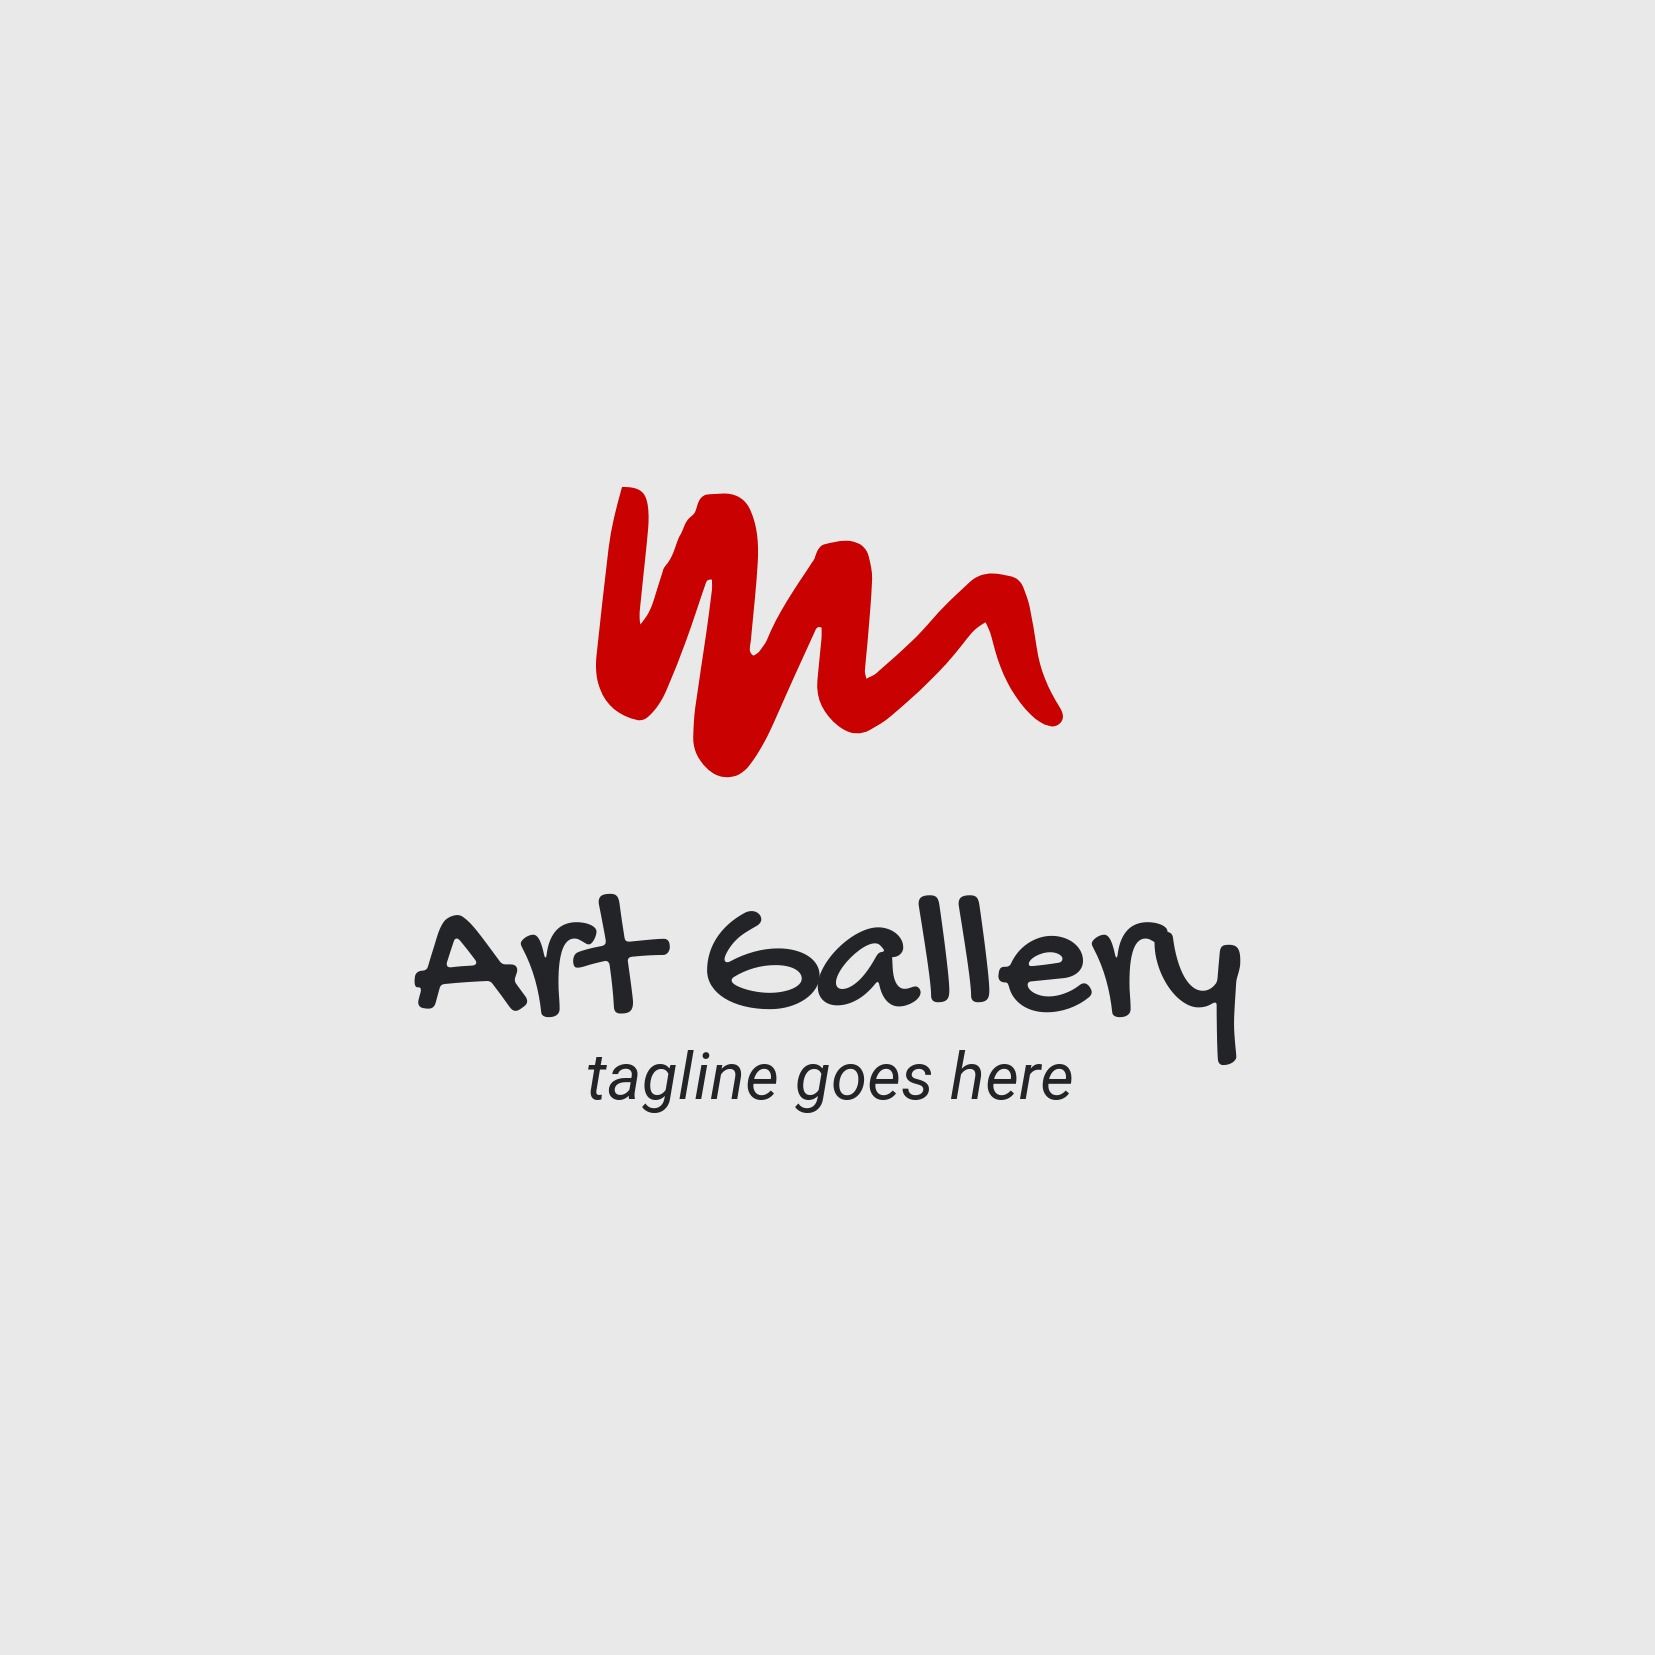 Logotipo de la galería de arte con pincelada roja - Gochi Hand es una fuente expresiva que imita la escritura de una adolescente - Imagen